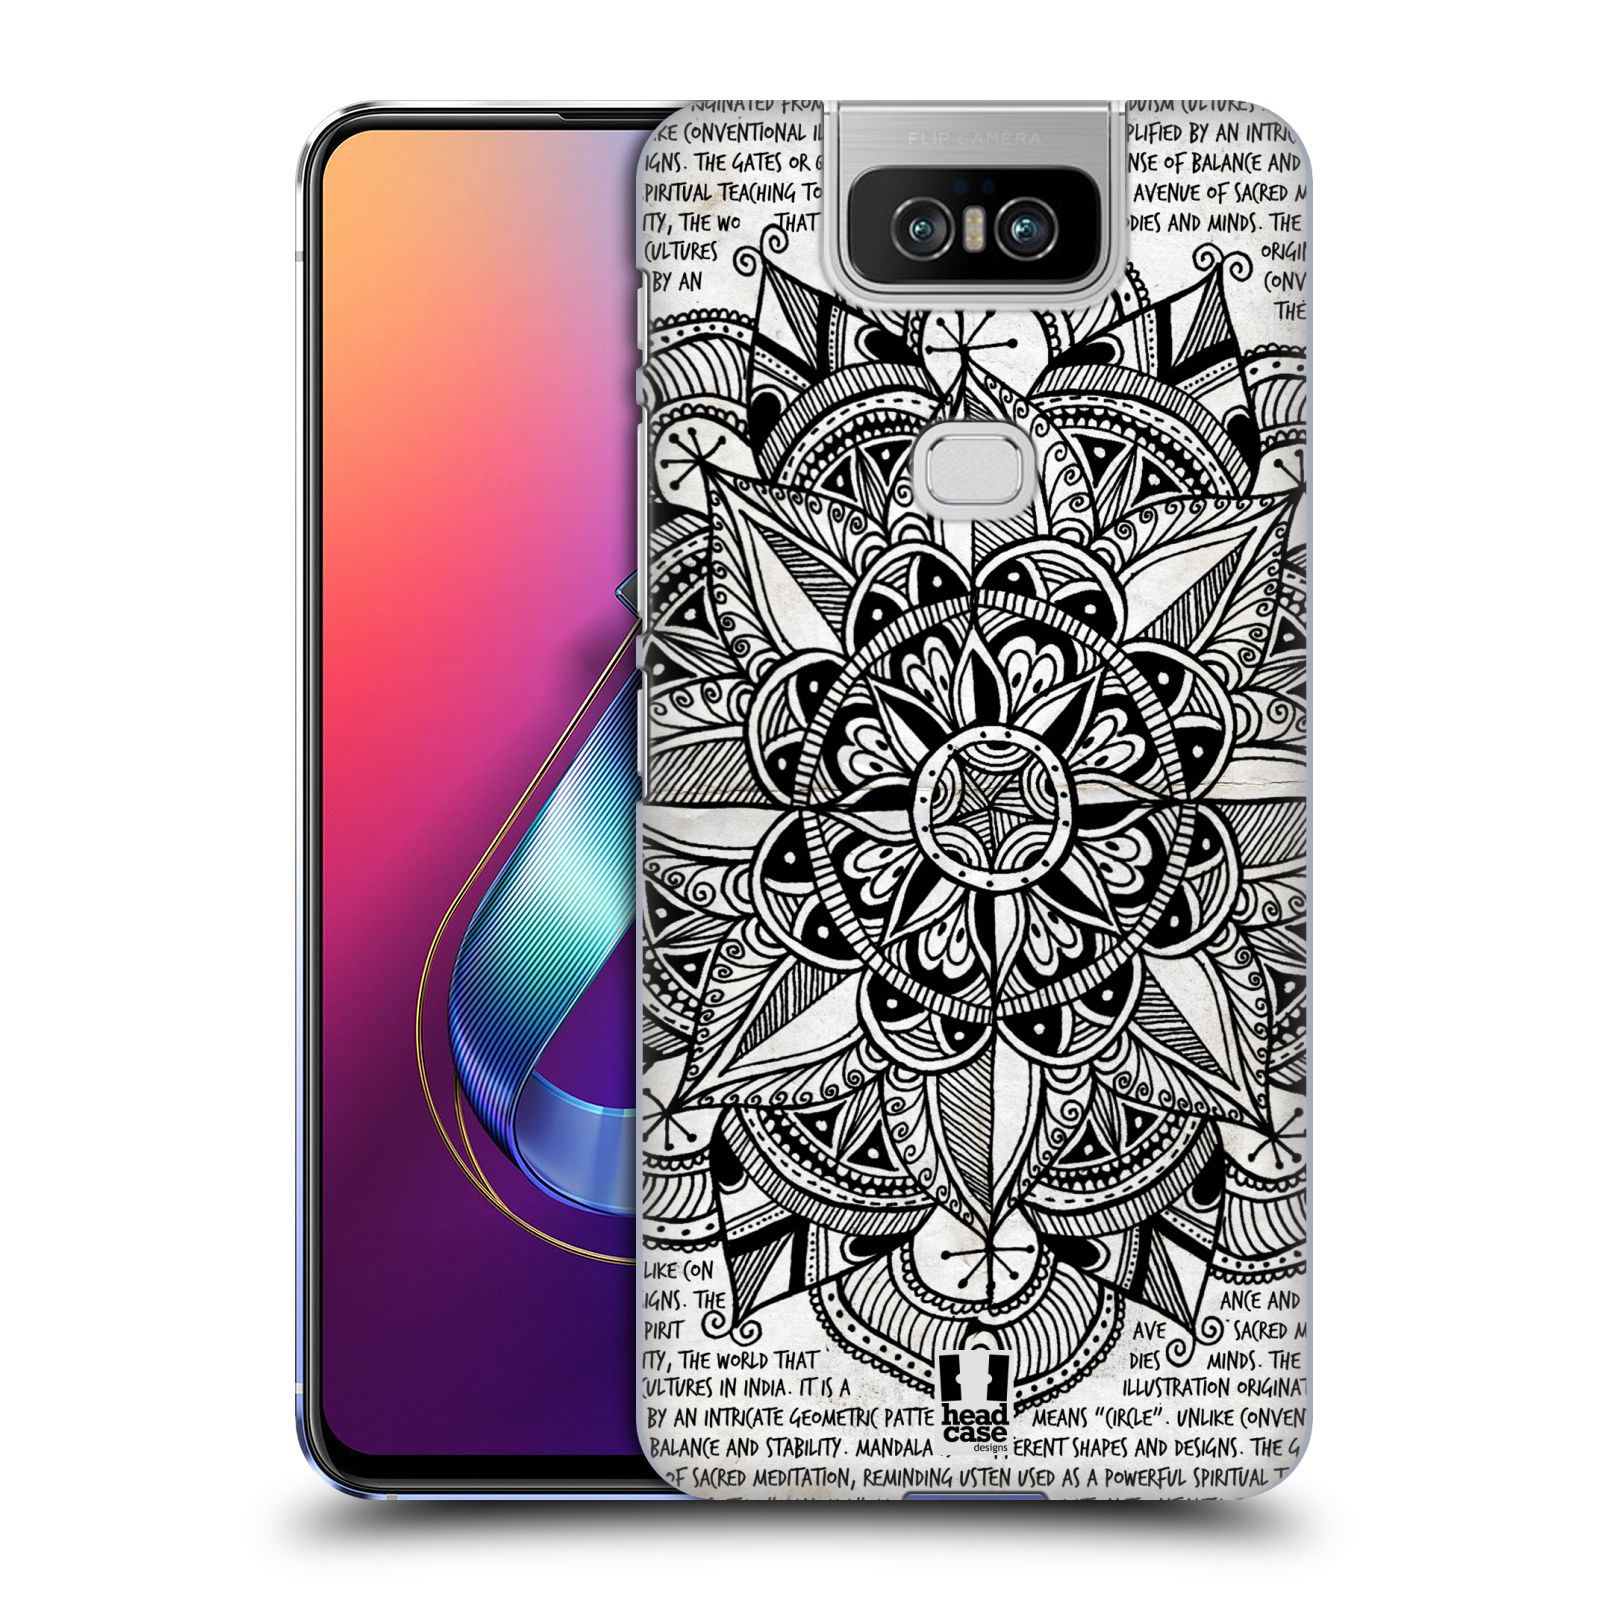 Pouzdro na mobil Asus Zenfone 6 ZS630KL - HEAD CASE - vzor Indie Mandala slunce barevná ČERNÁ A BÍLÁ MAPA